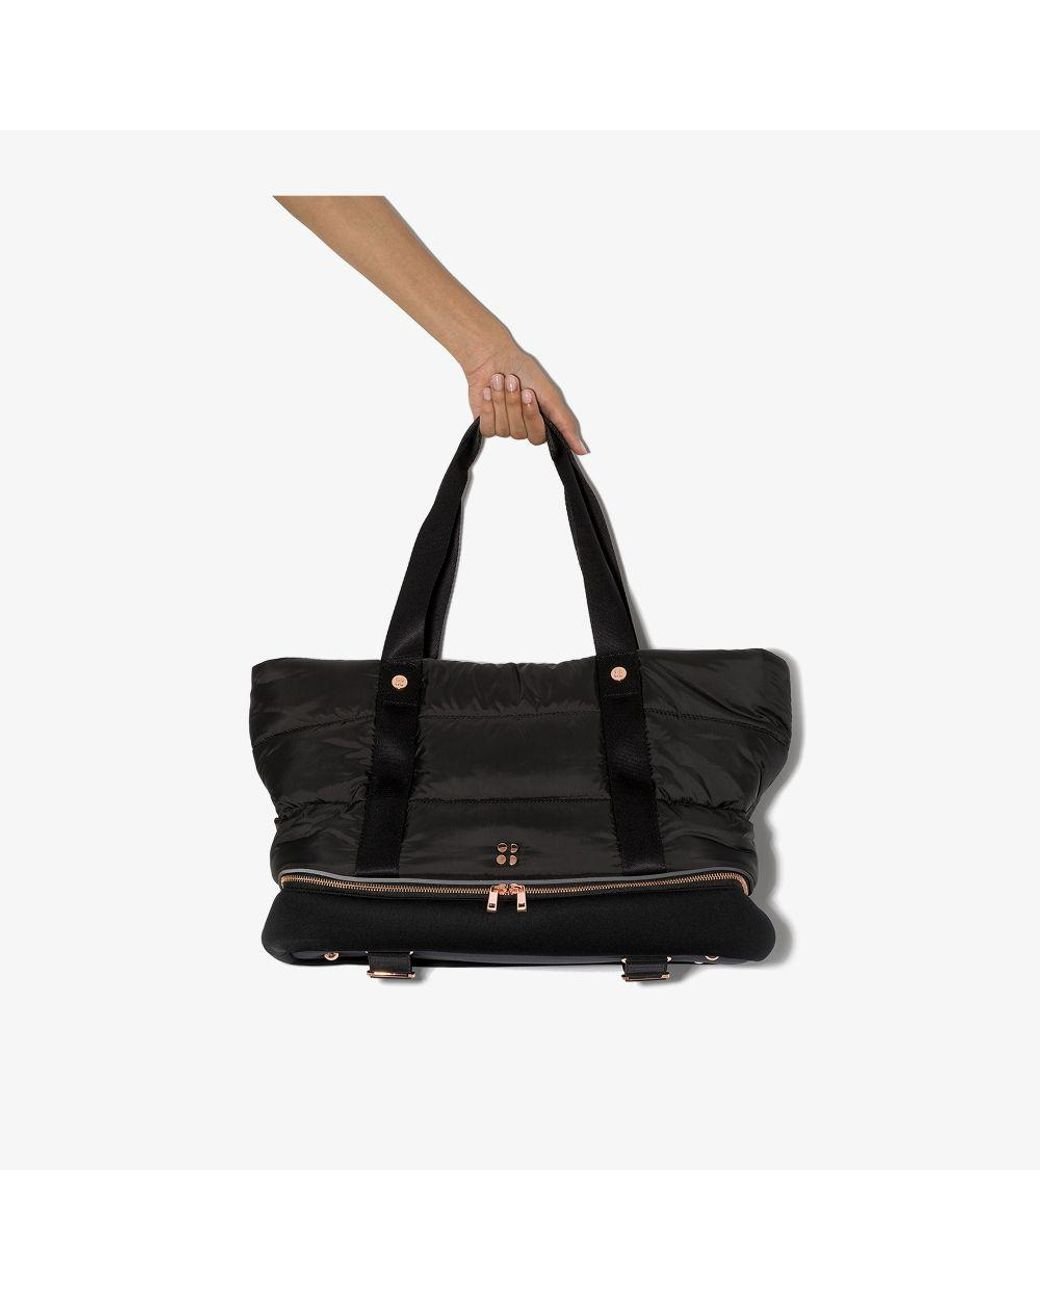 Sweaty Betty Bags & Handbags for Women for sale